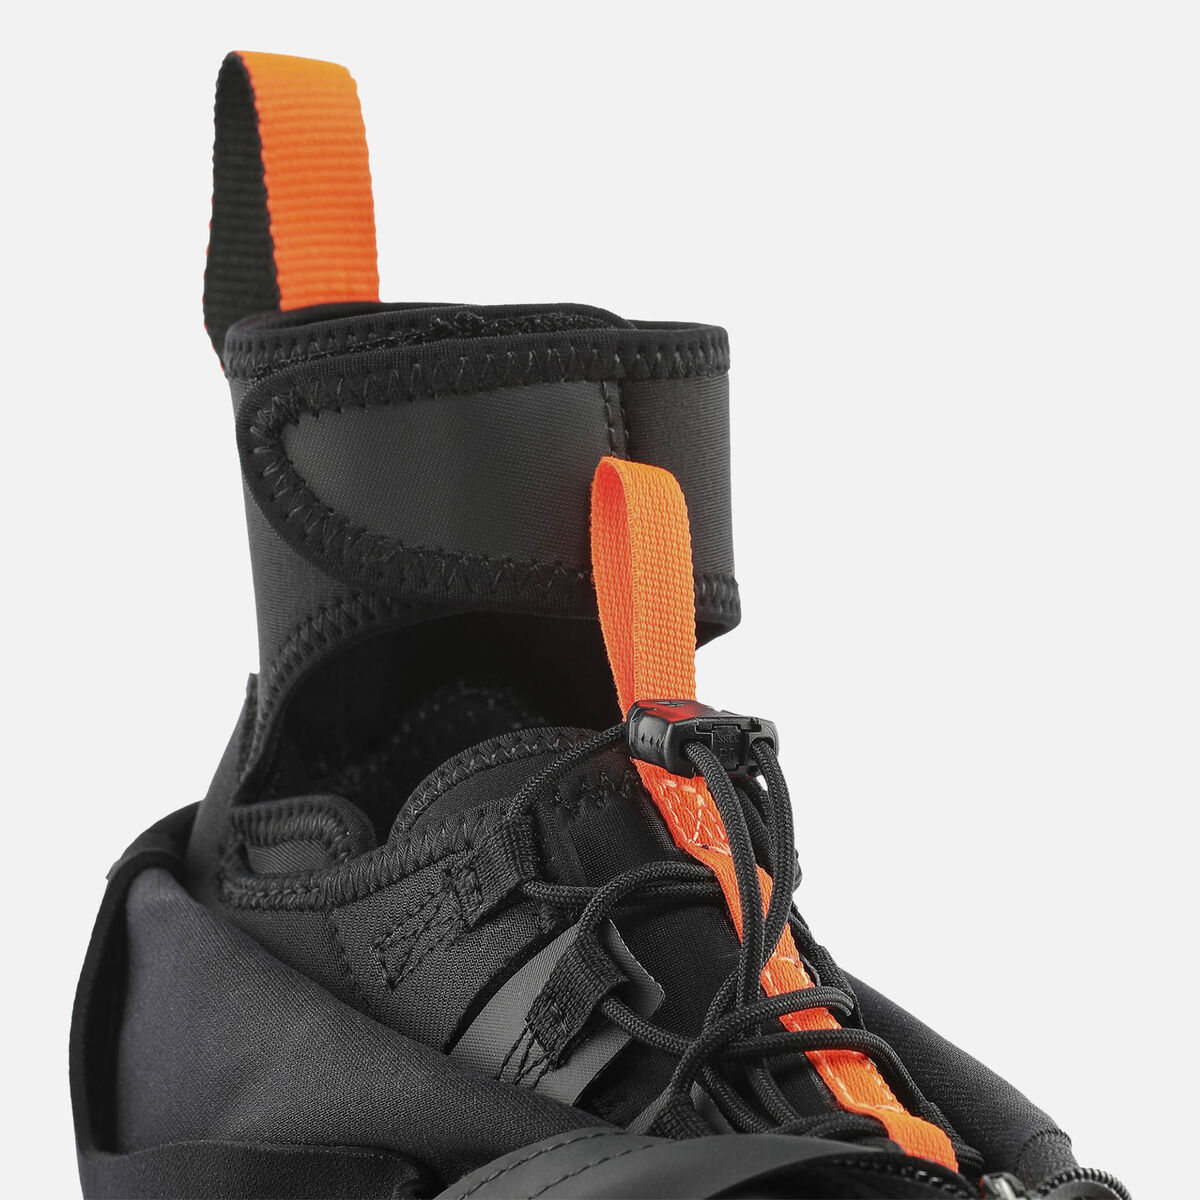 Chaussures de ski nordique Racing Homme X-10 Classic